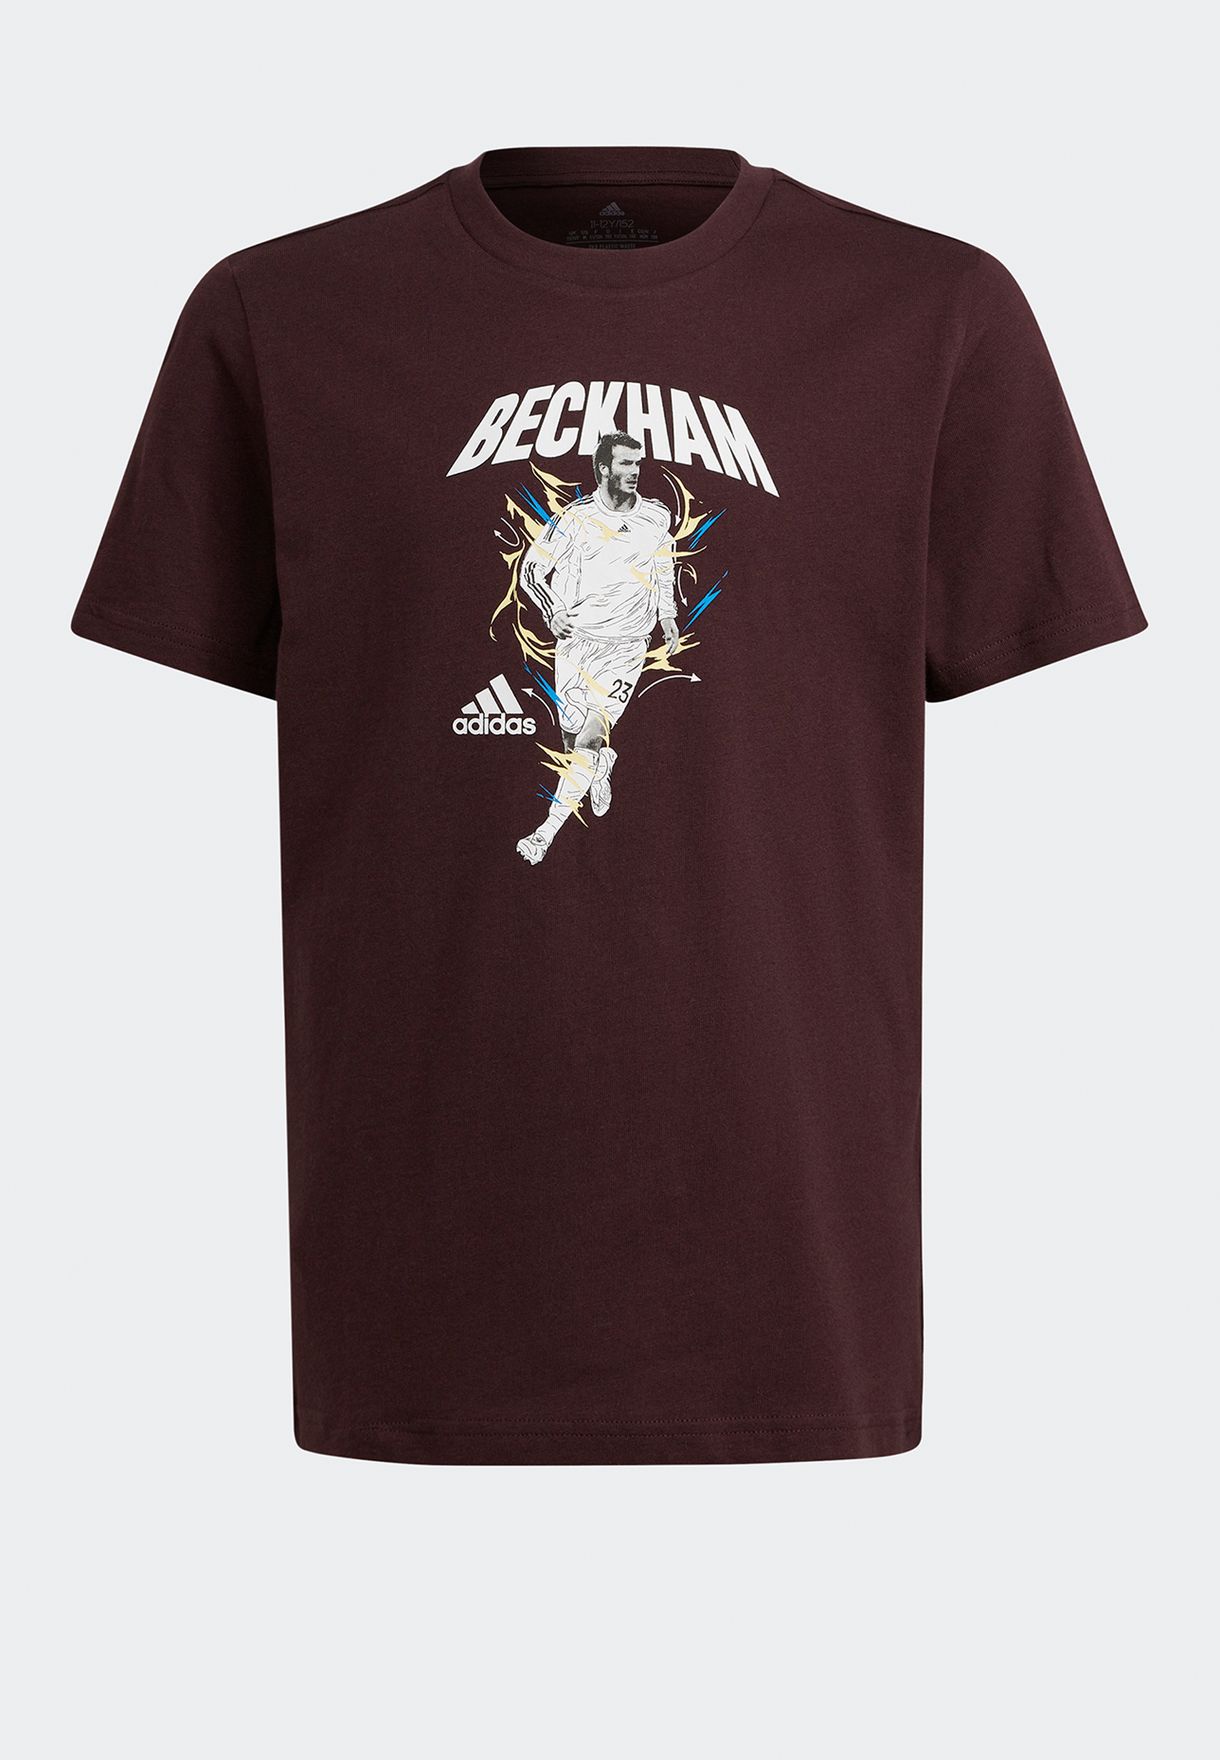 Youth Beckham T-Shirt